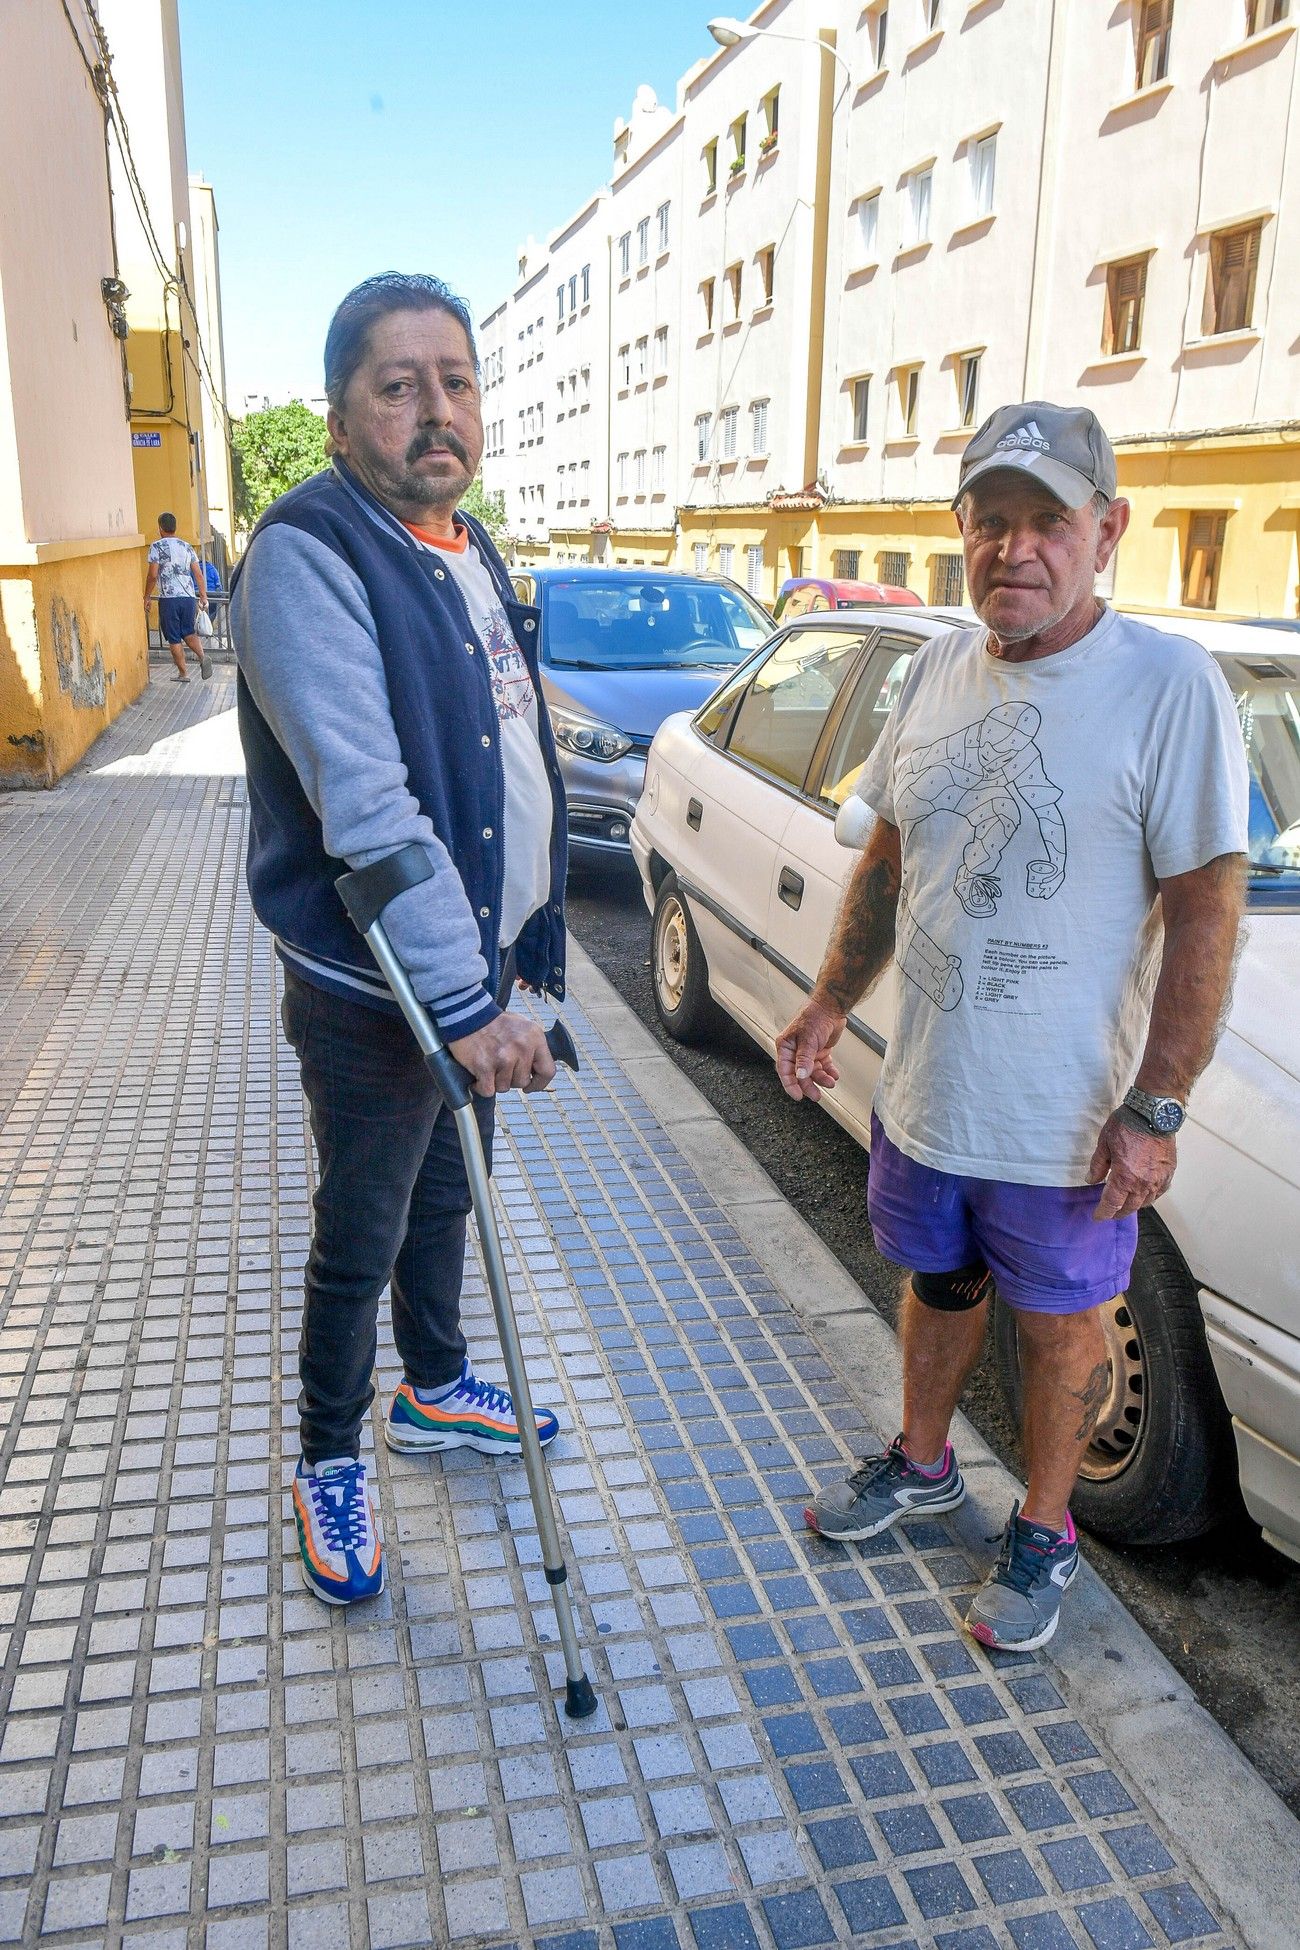 Barrios sin accesibilidad: el 70% de los edificios de Las Palmas de Gran Canaria no son accesibles.